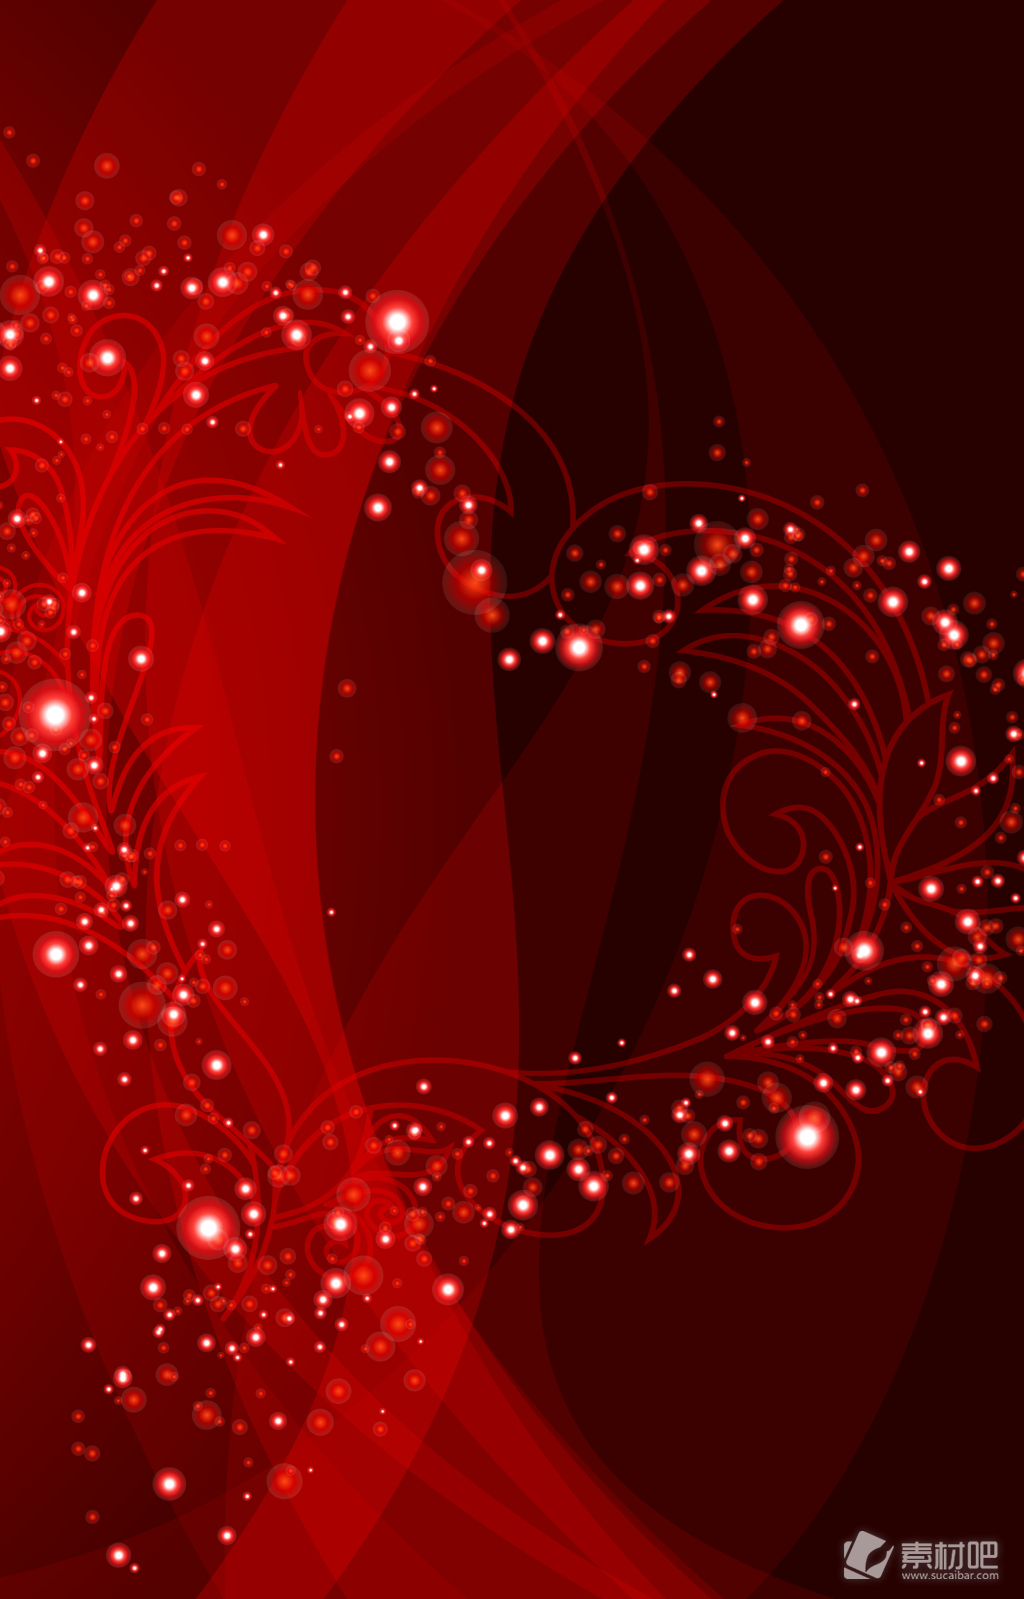 红色花纹组成的爱心背景素材